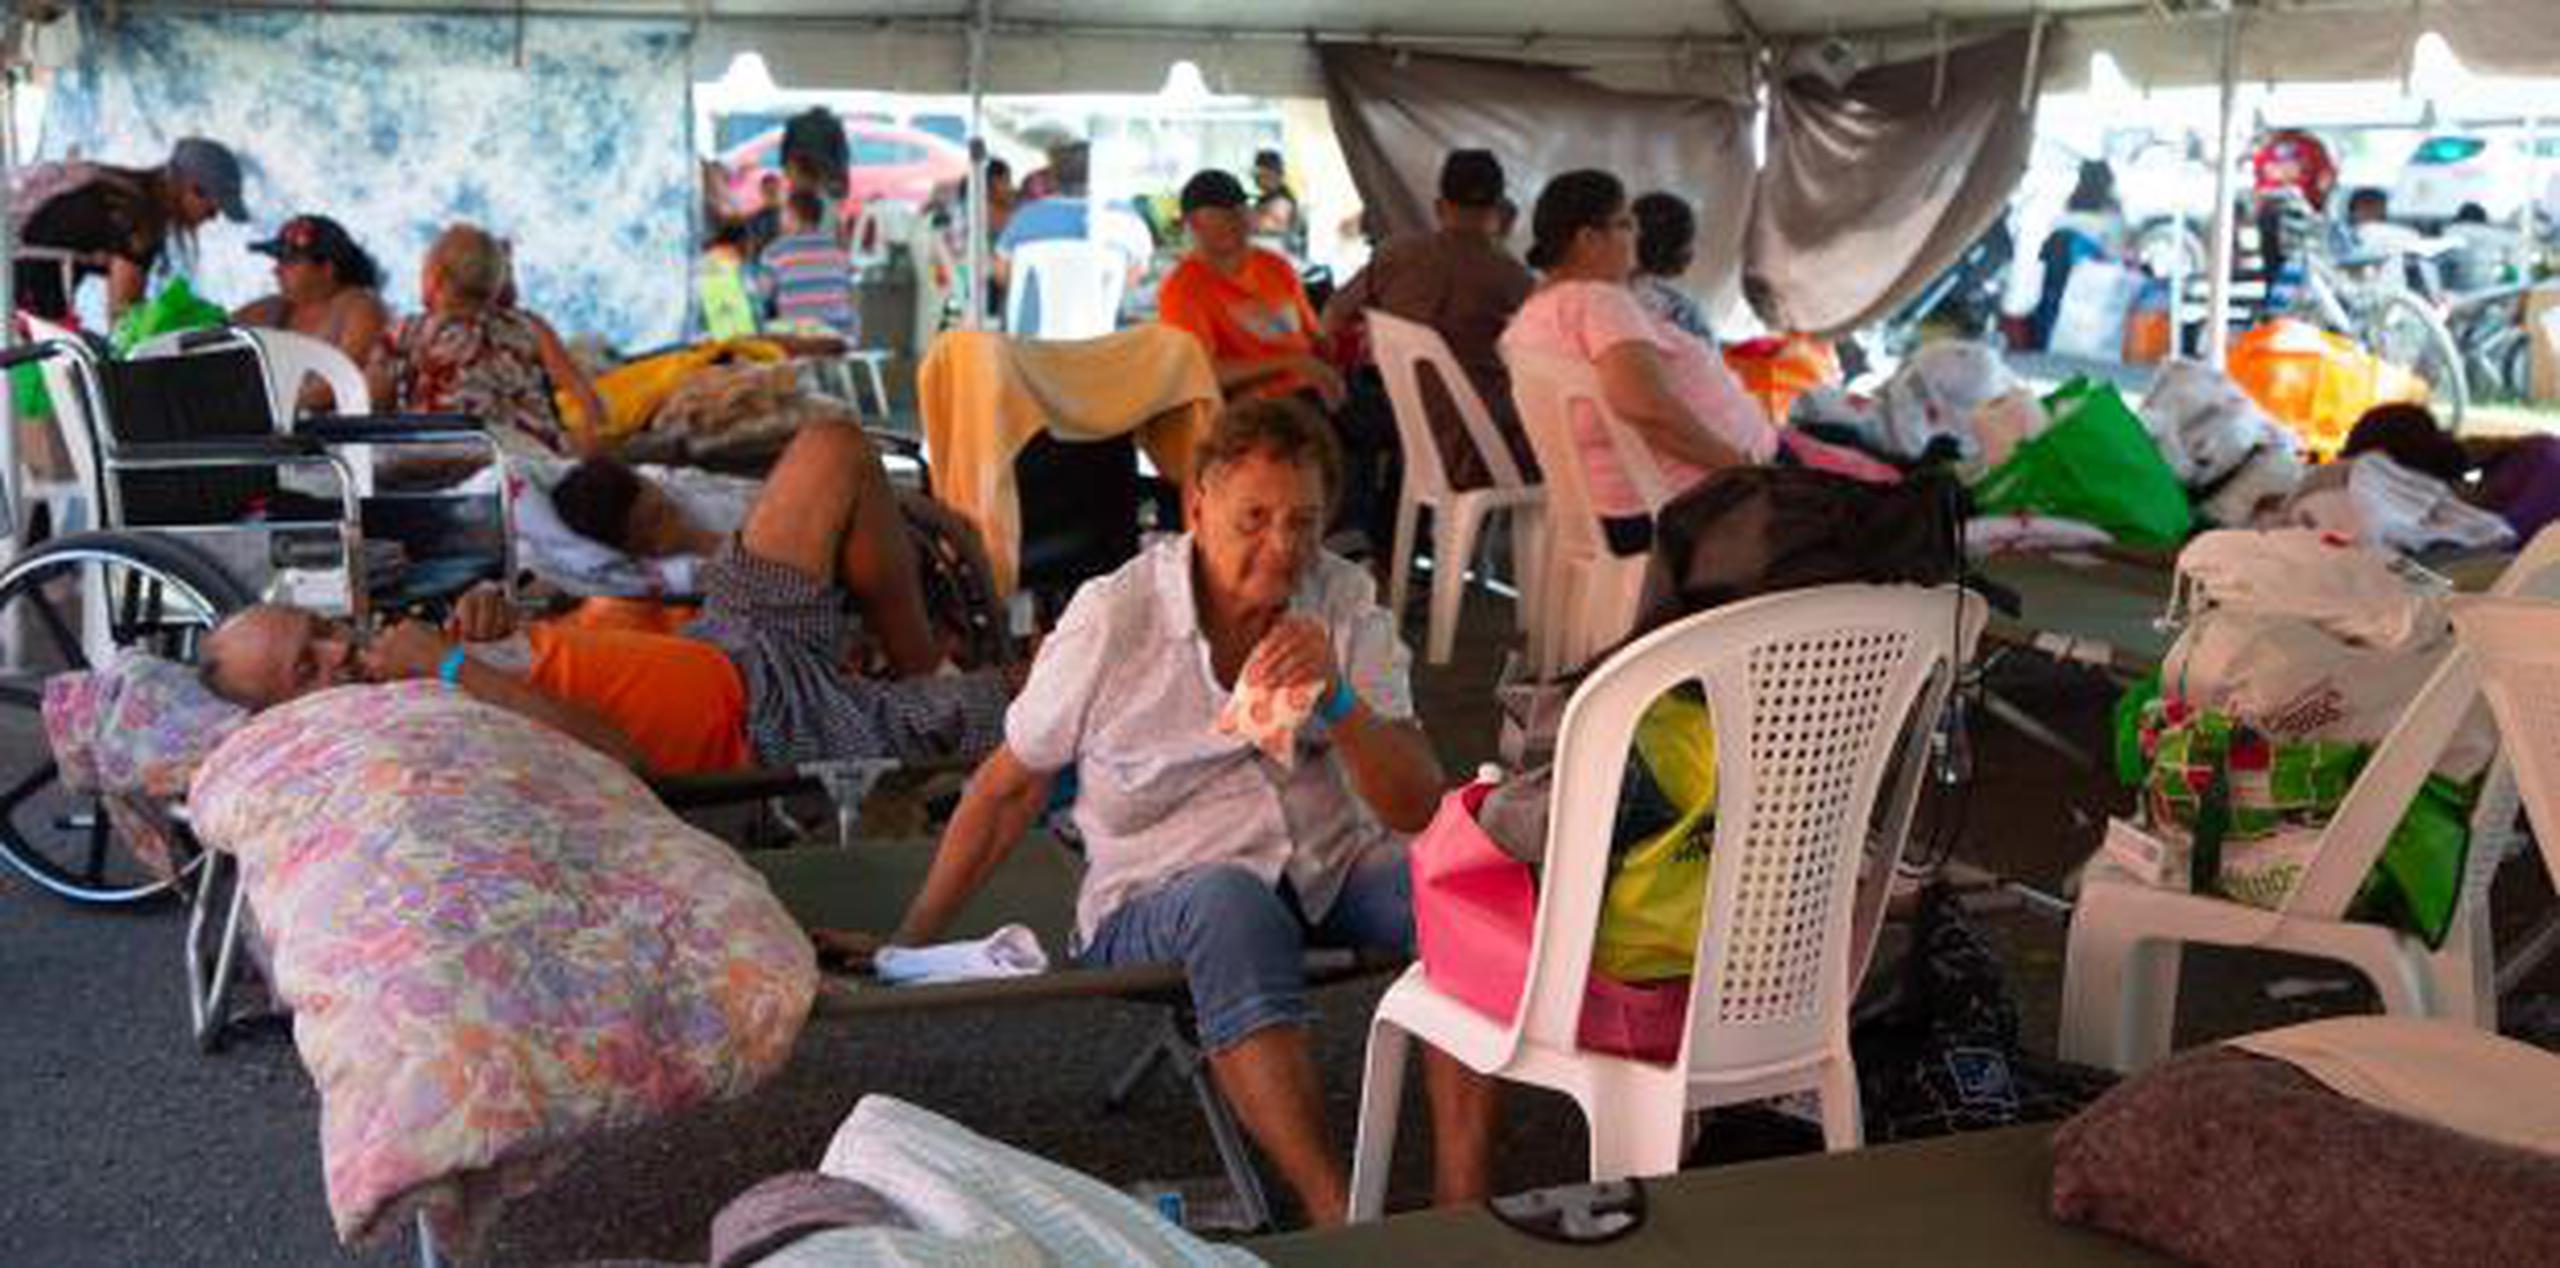 Refugiados en Guánica (Jorge A Ramirez Portela para Primera Hora)